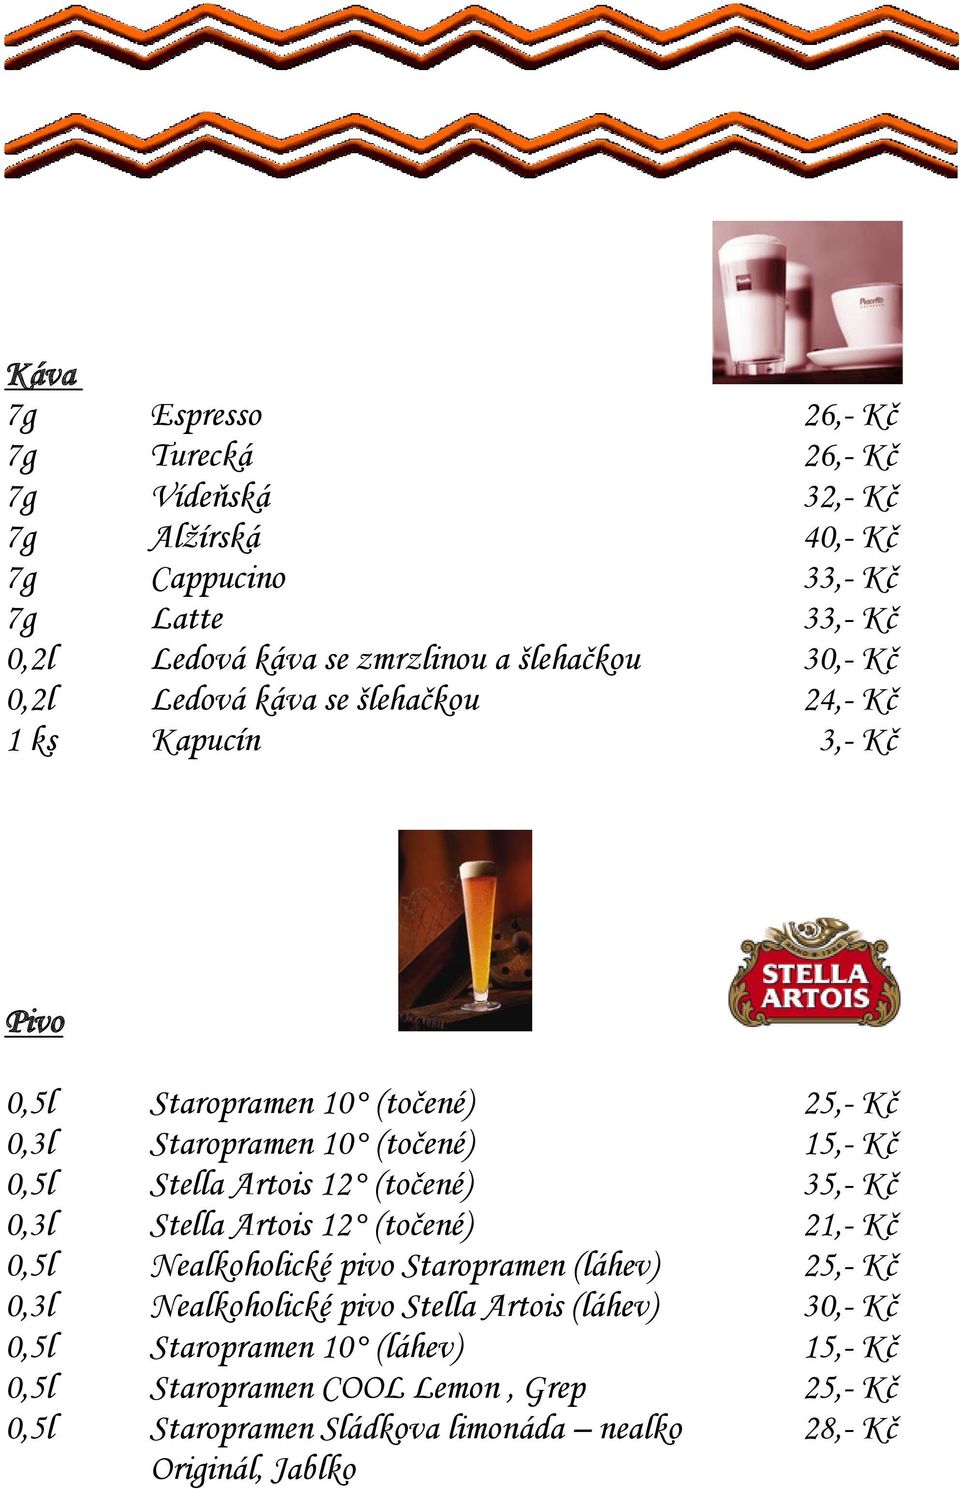 Stella Artois 12 (točené) 35,- Kč 0,3l Stella Artois 12 (točené) 21,- Kč 0,5l Nealkoholické pivo Staropramen (láhev) 25,- Kč 0,3l Nealkoholické pivo Stella